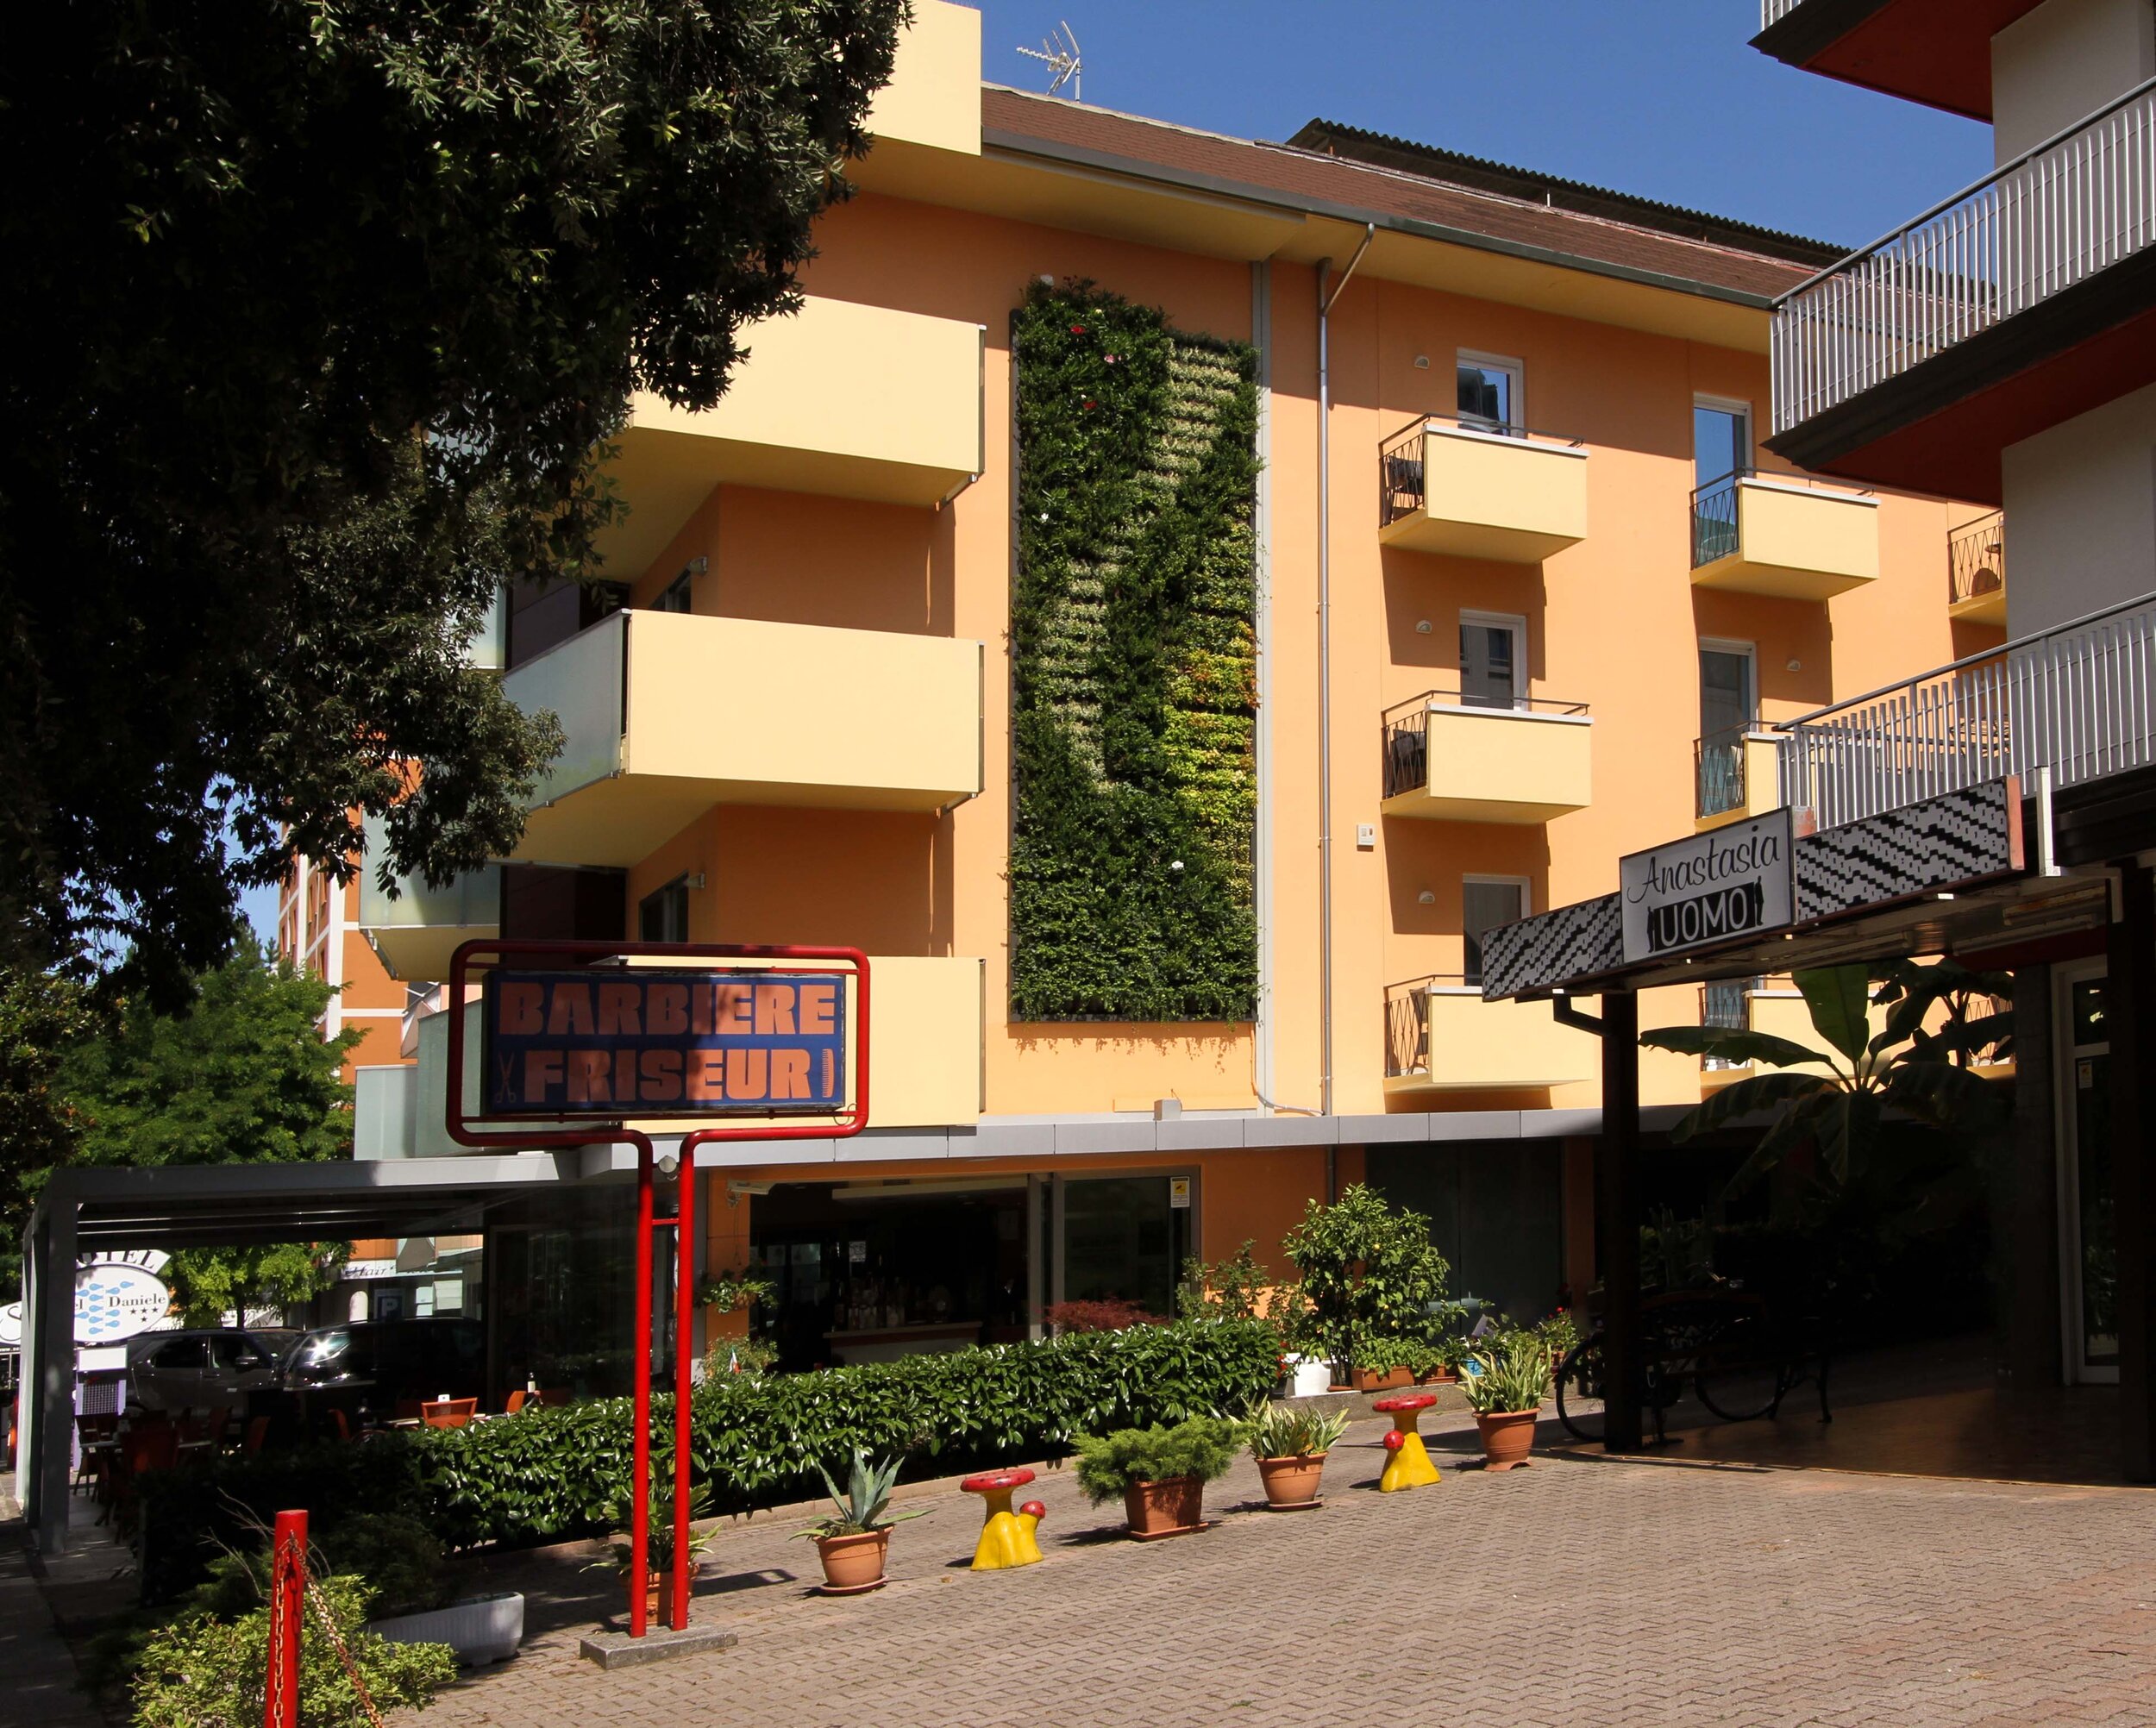 daniele-hotel-garten-vertikale-wand-grün-sundar-italia-004.jpg